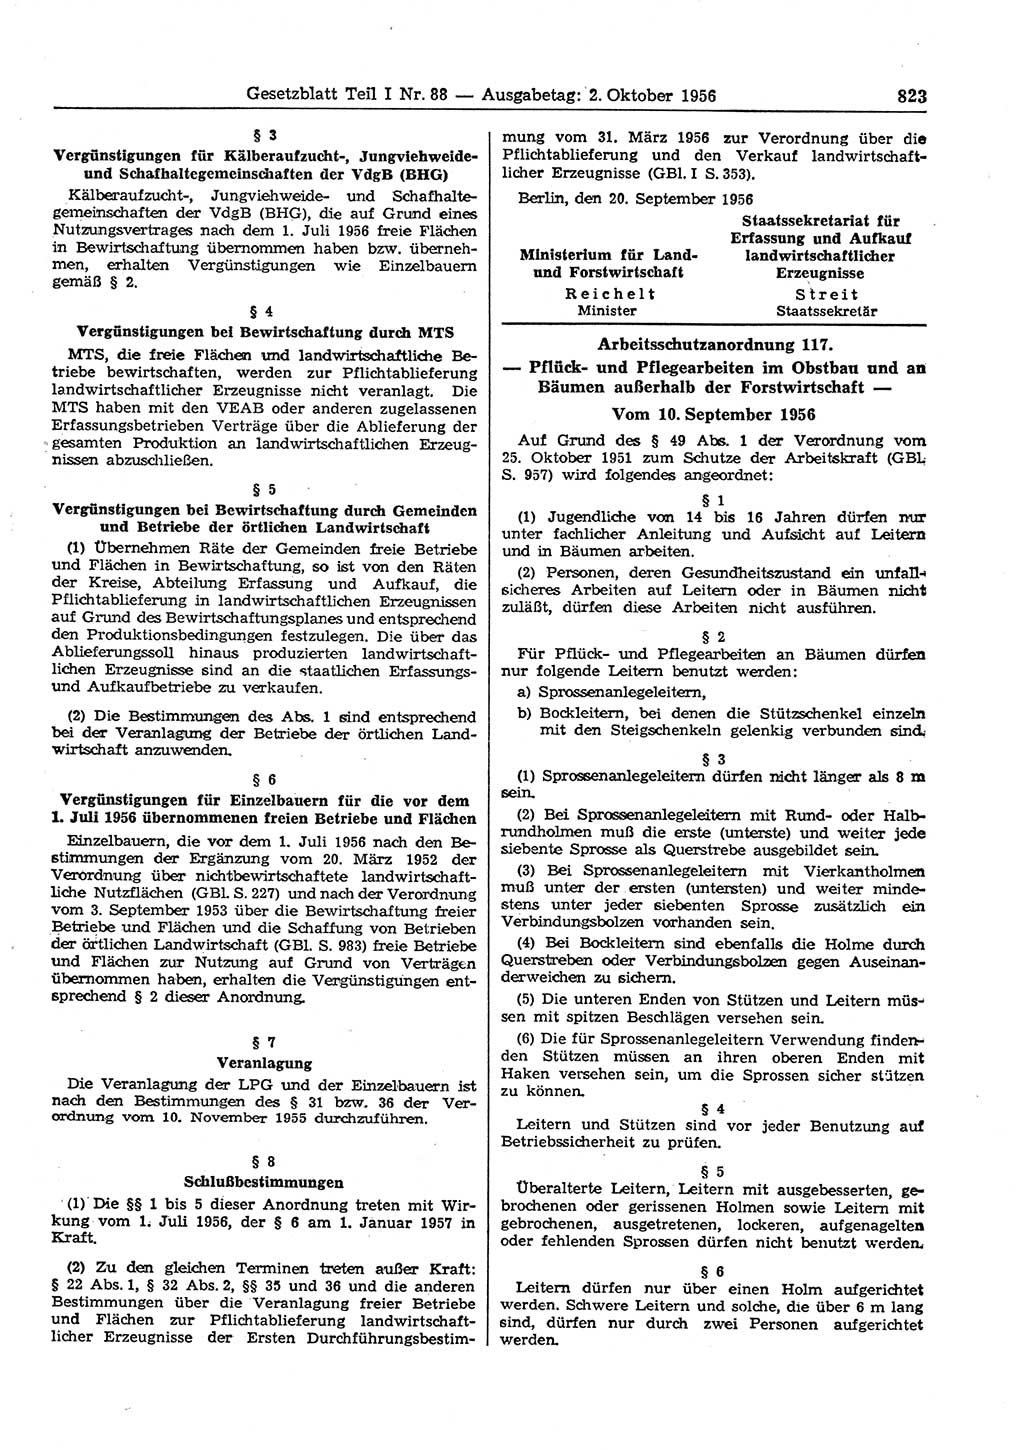 Gesetzblatt (GBl.) der Deutschen Demokratischen Republik (DDR) Teil Ⅰ 1956, Seite 823 (GBl. DDR Ⅰ 1956, S. 823)